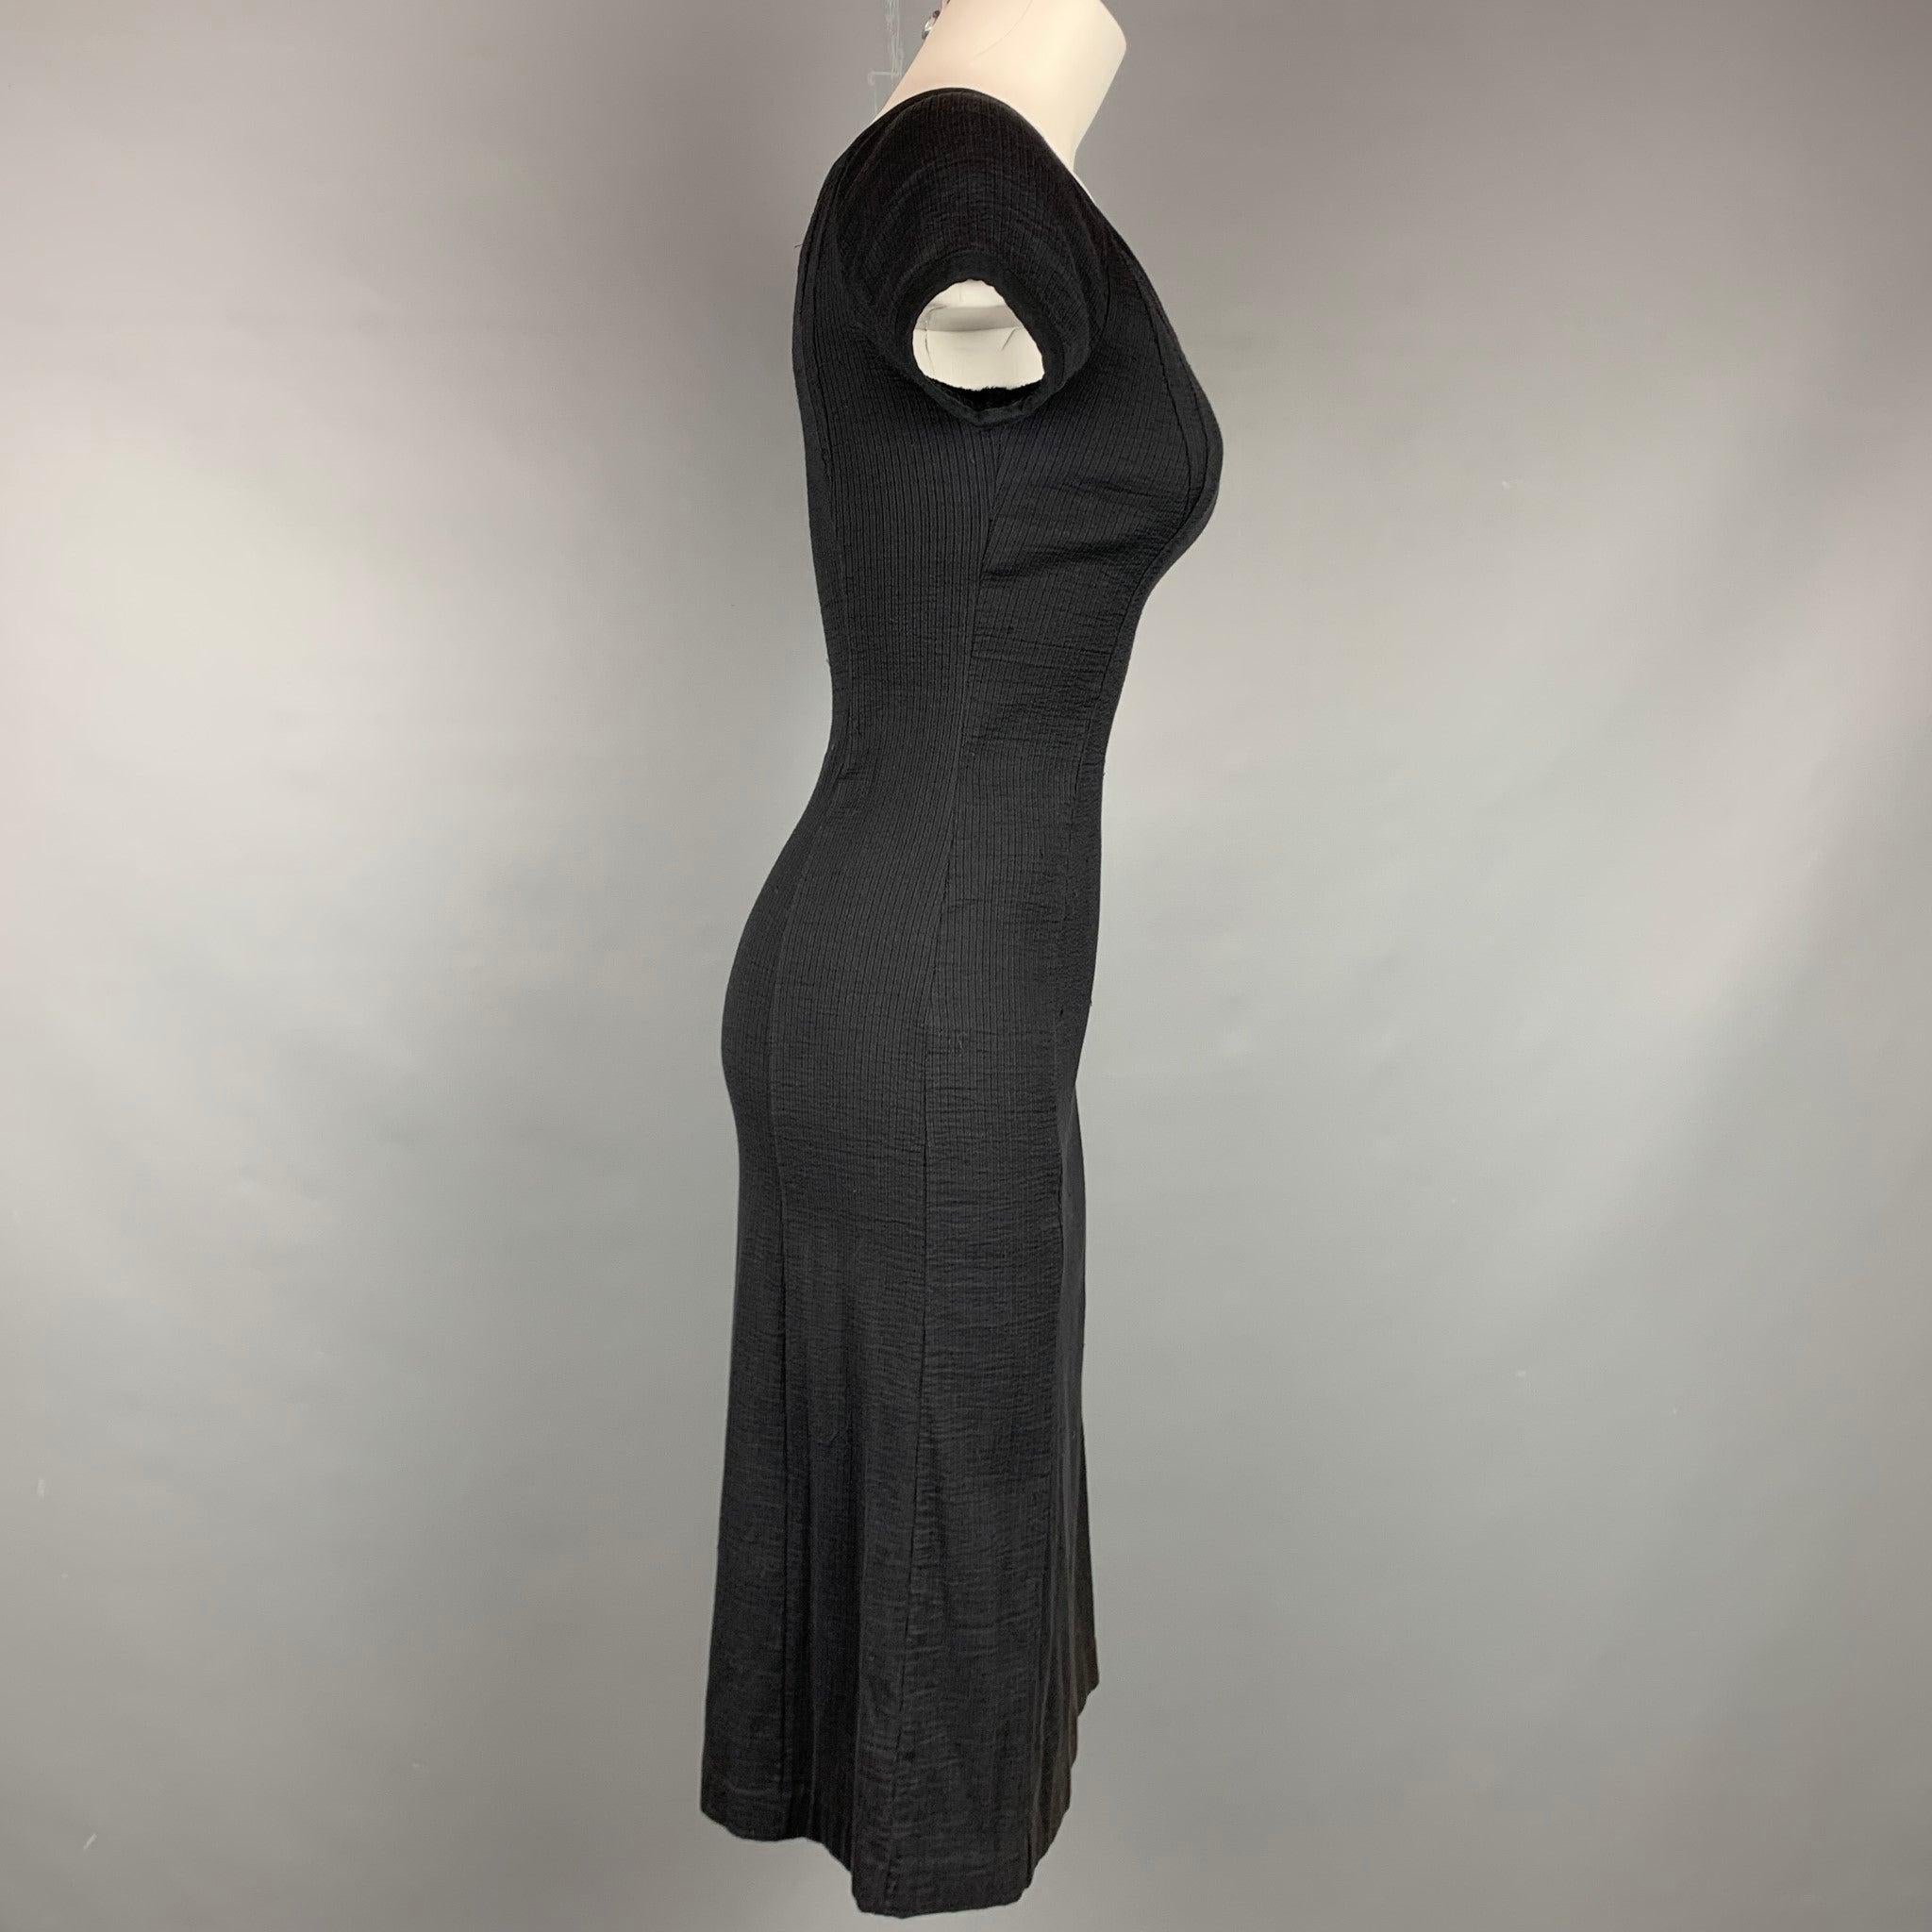 La robe NARCISO RODRIGUEZ se présente sous la forme d'une robe noire en coton/polyamide côtelé, avec des manches courtes et une encolure en V. Fabriqué en Italie.
Etat d'occasion. 

Marqué :   I 38 / F 34 / D 34 / GB 6 / USA 2 

Mesures : 
 
Épaule